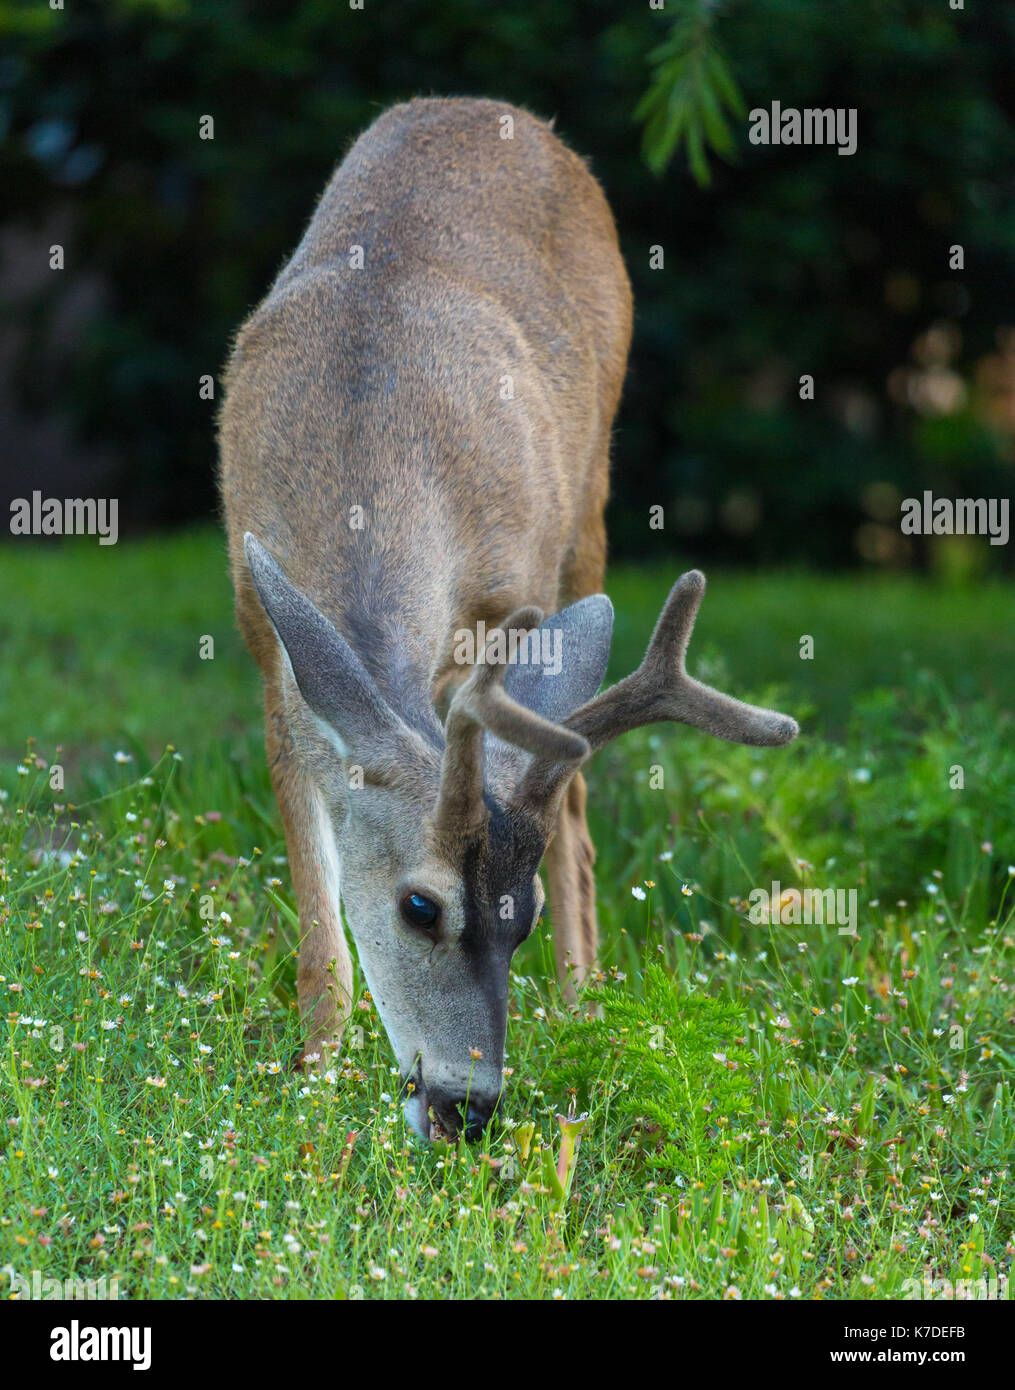 Deer grazing Stock Photo